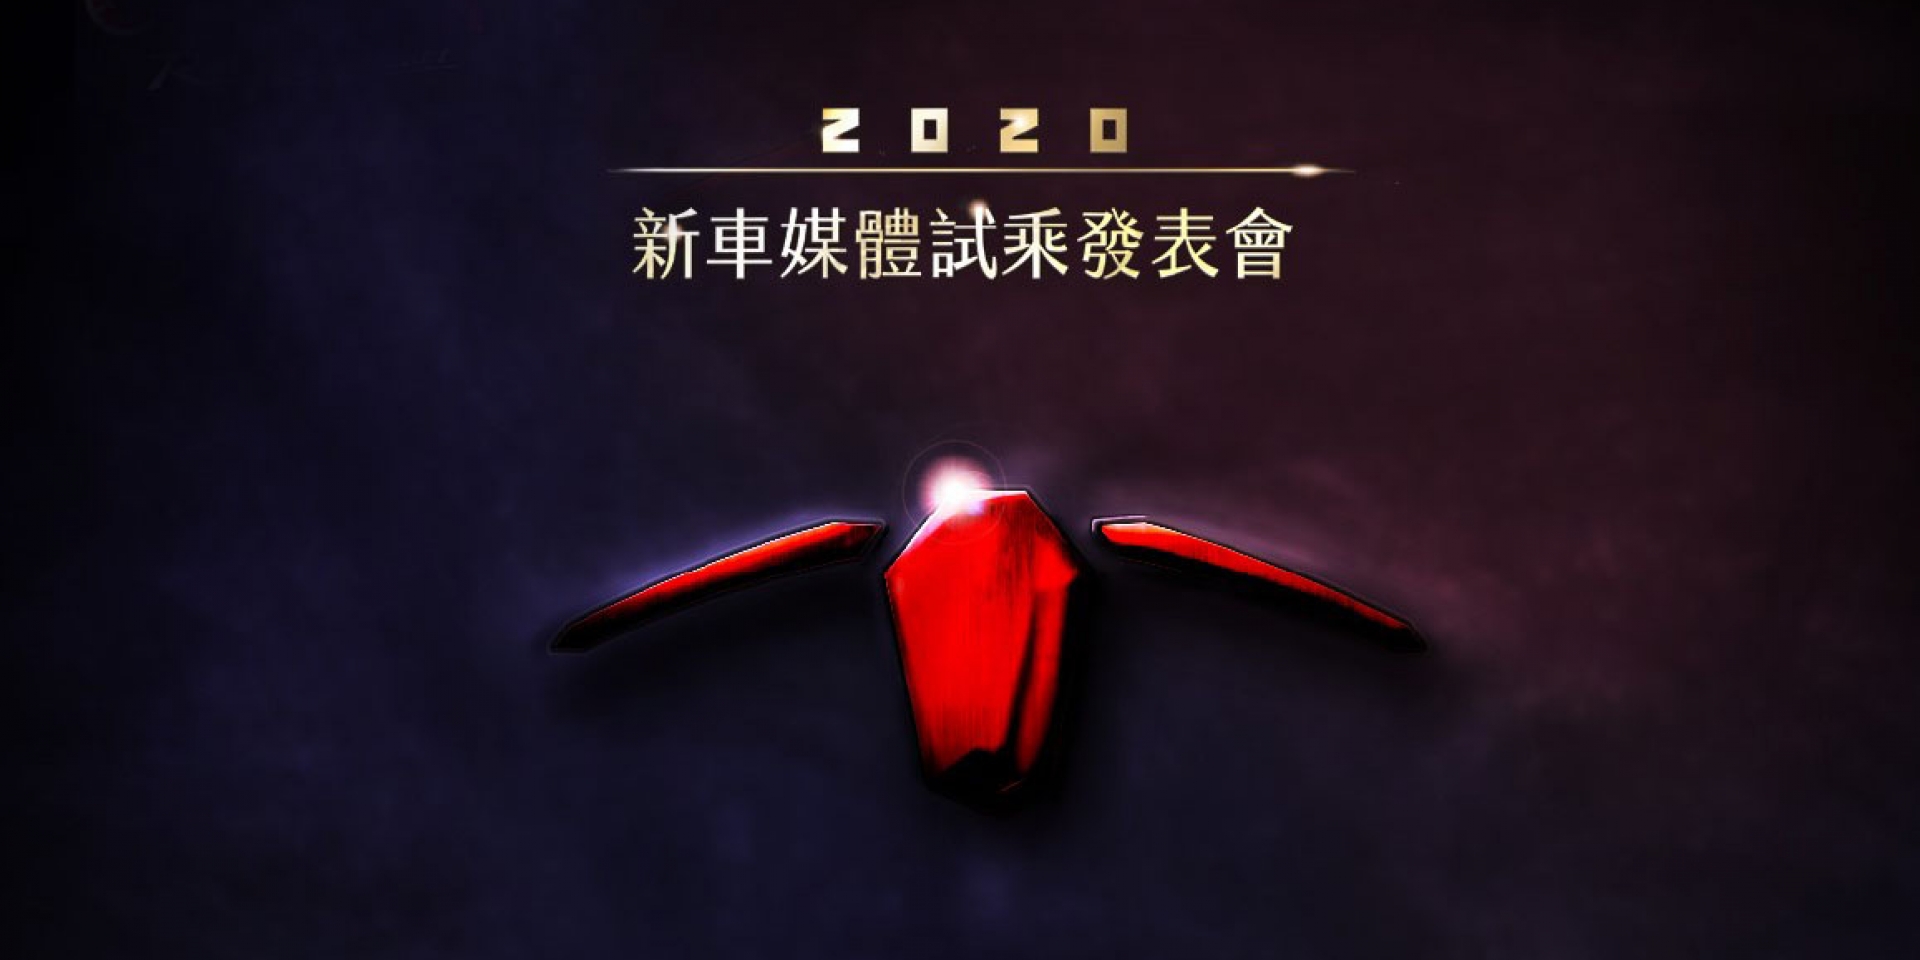 2020 全新YAMAHA TMAX560 12/19台灣發表